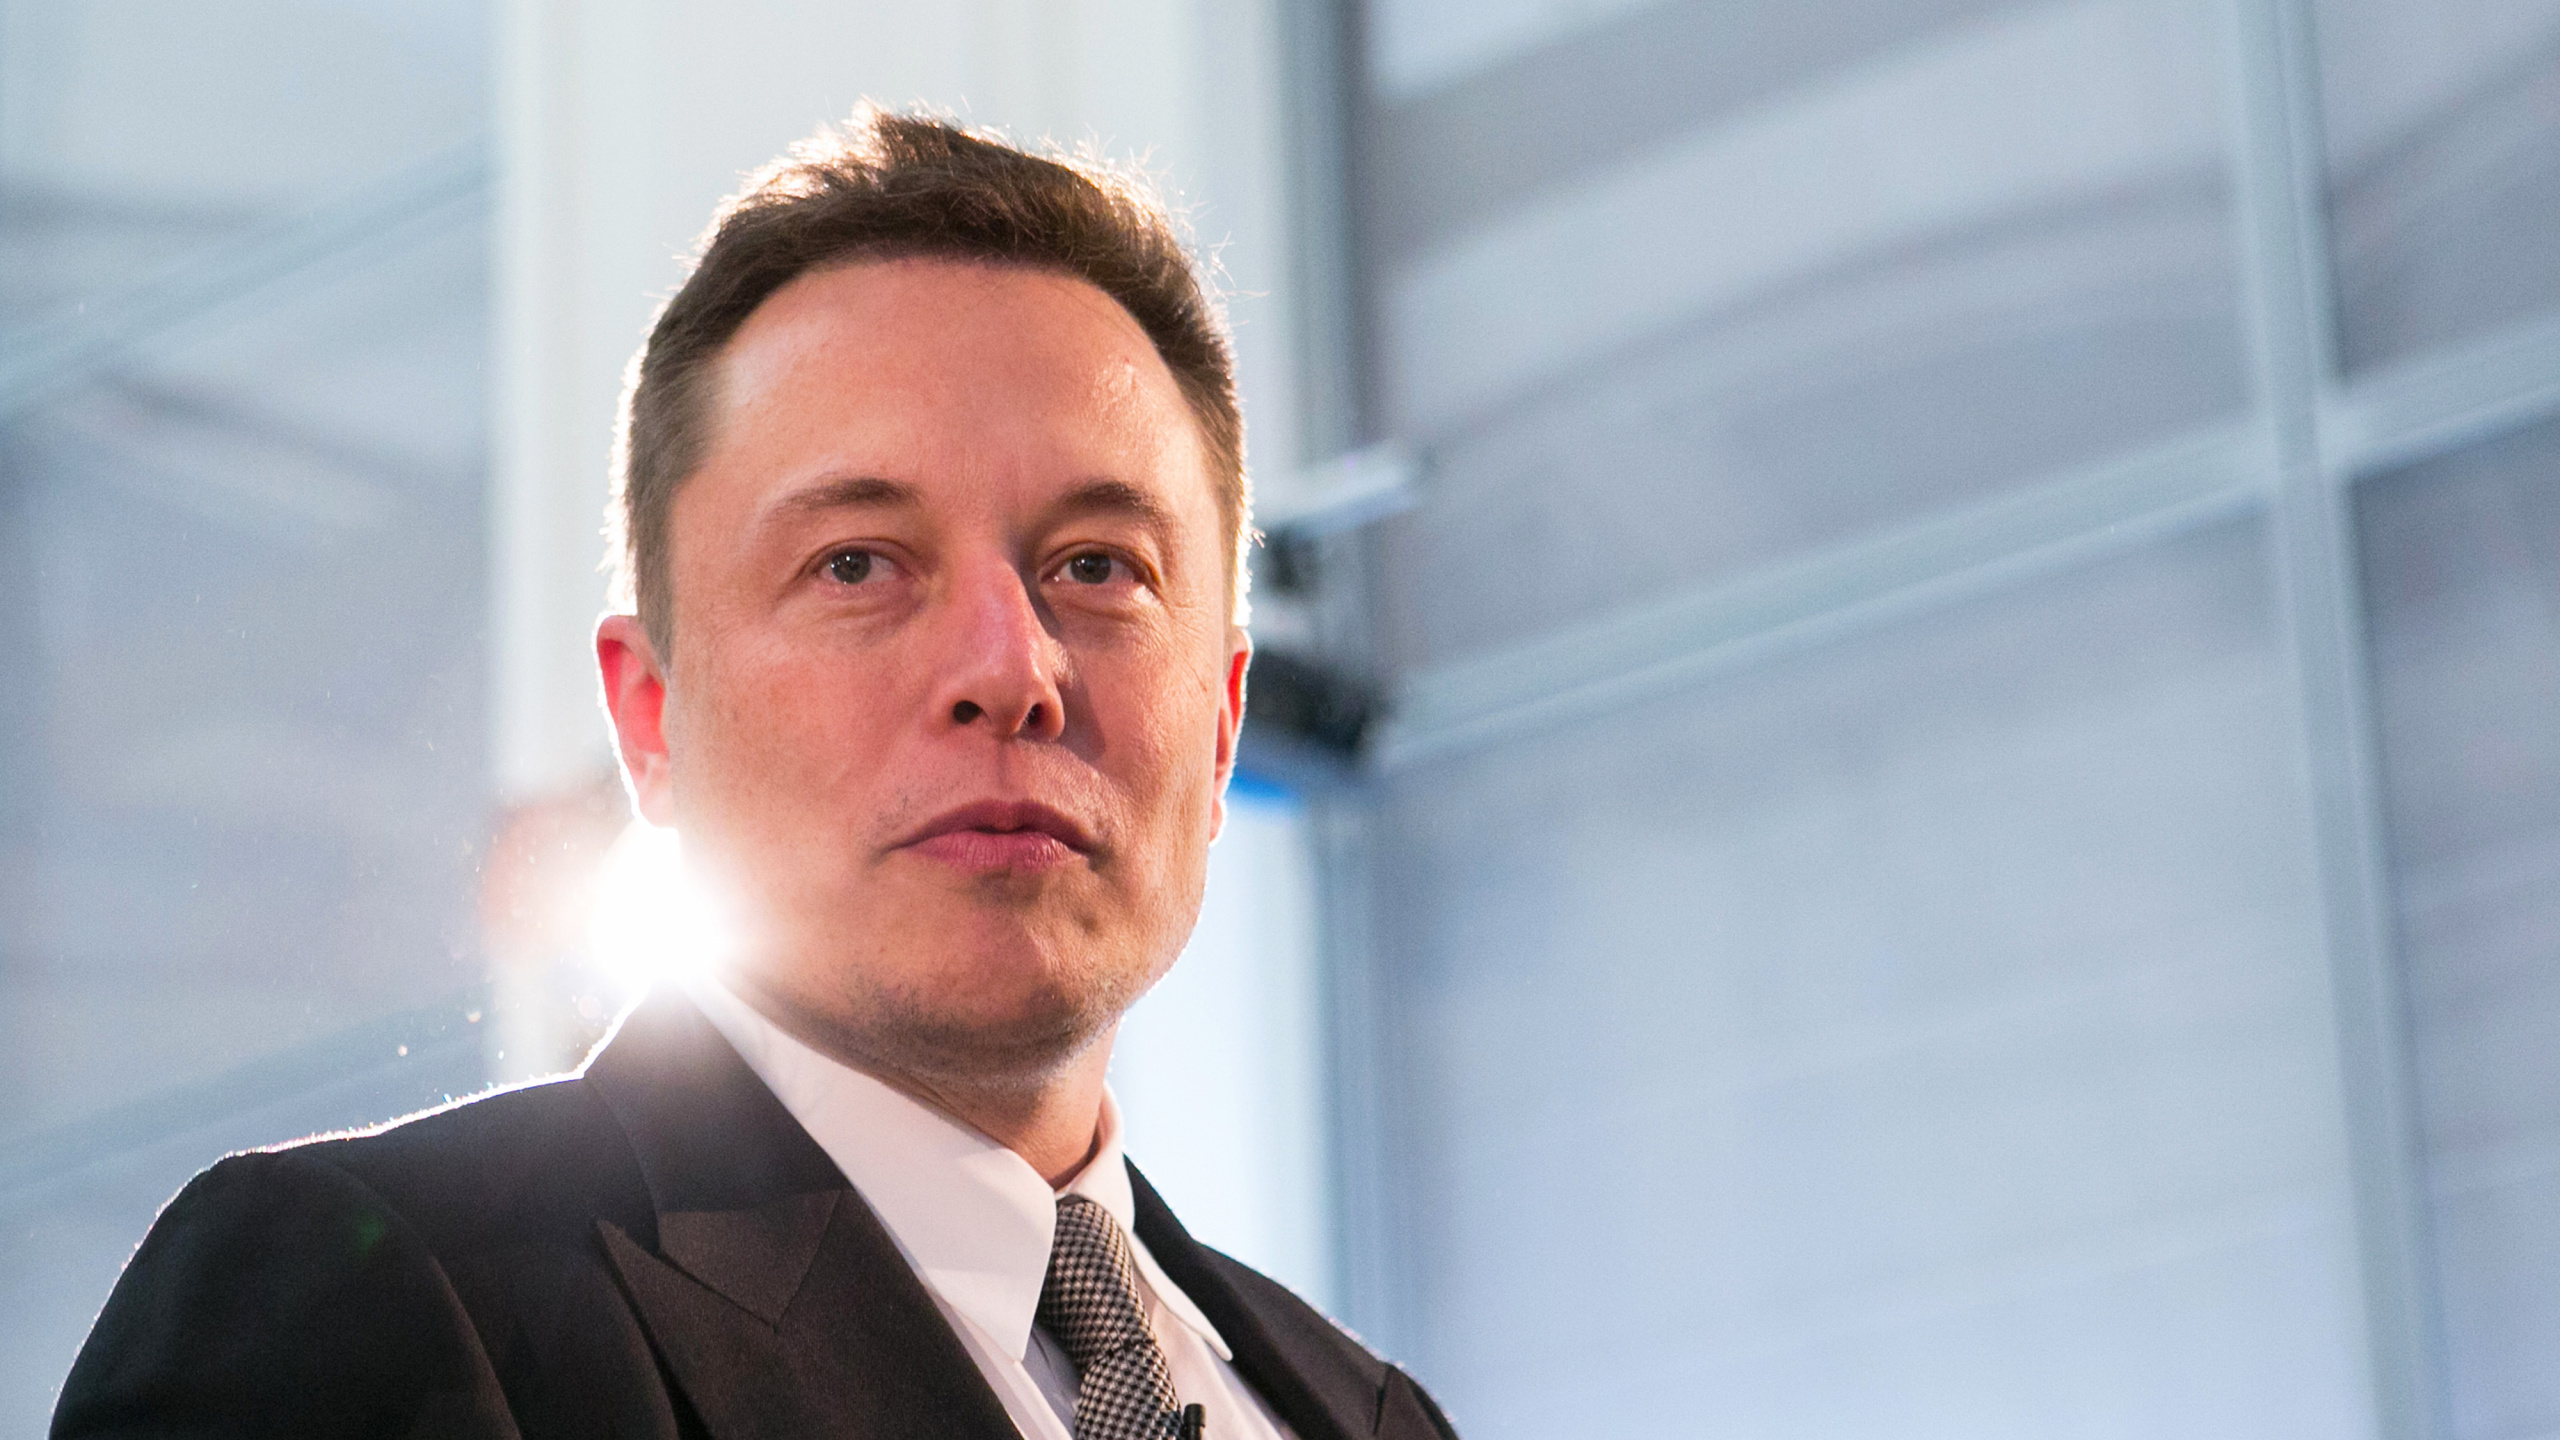 Elon Musk, Empresario, Traje, el Vello Facial, Negocio. Wallpaper in 2560x1440 Resolution